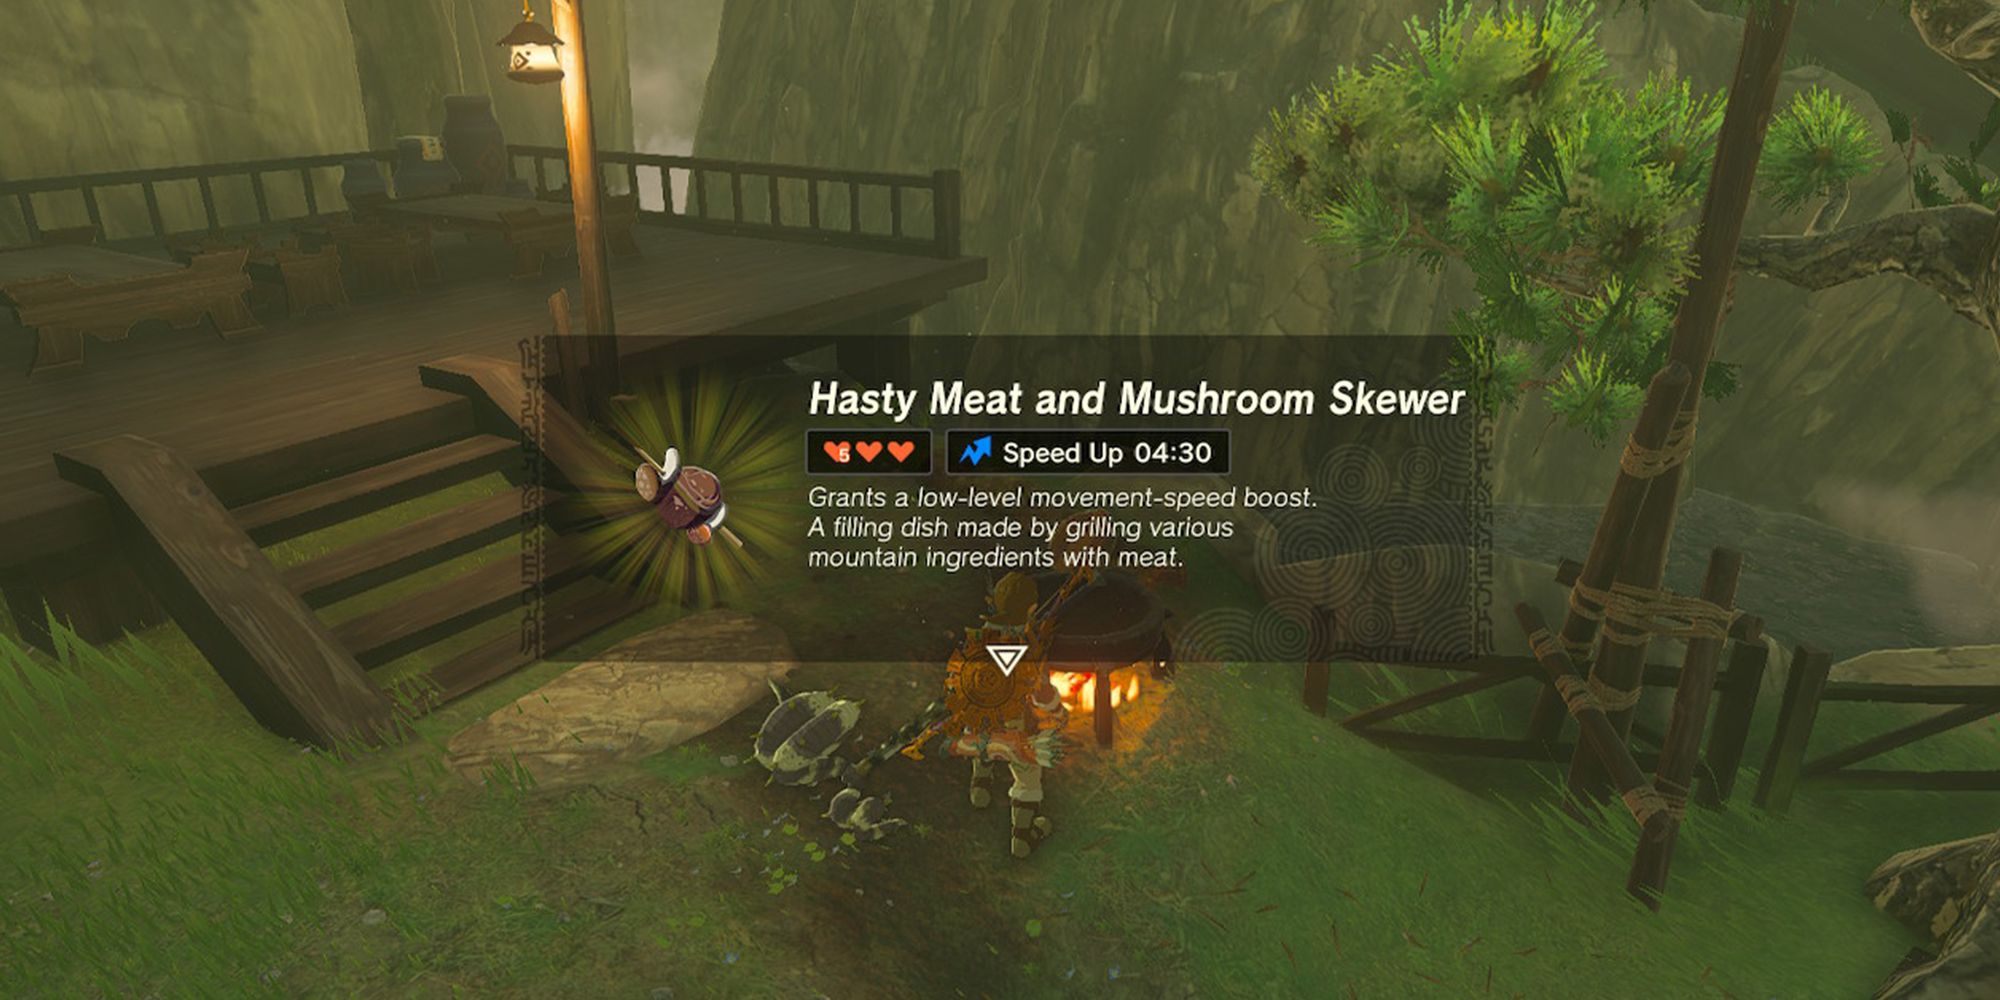 Hasty Meat and Mushroom Skewer recipe